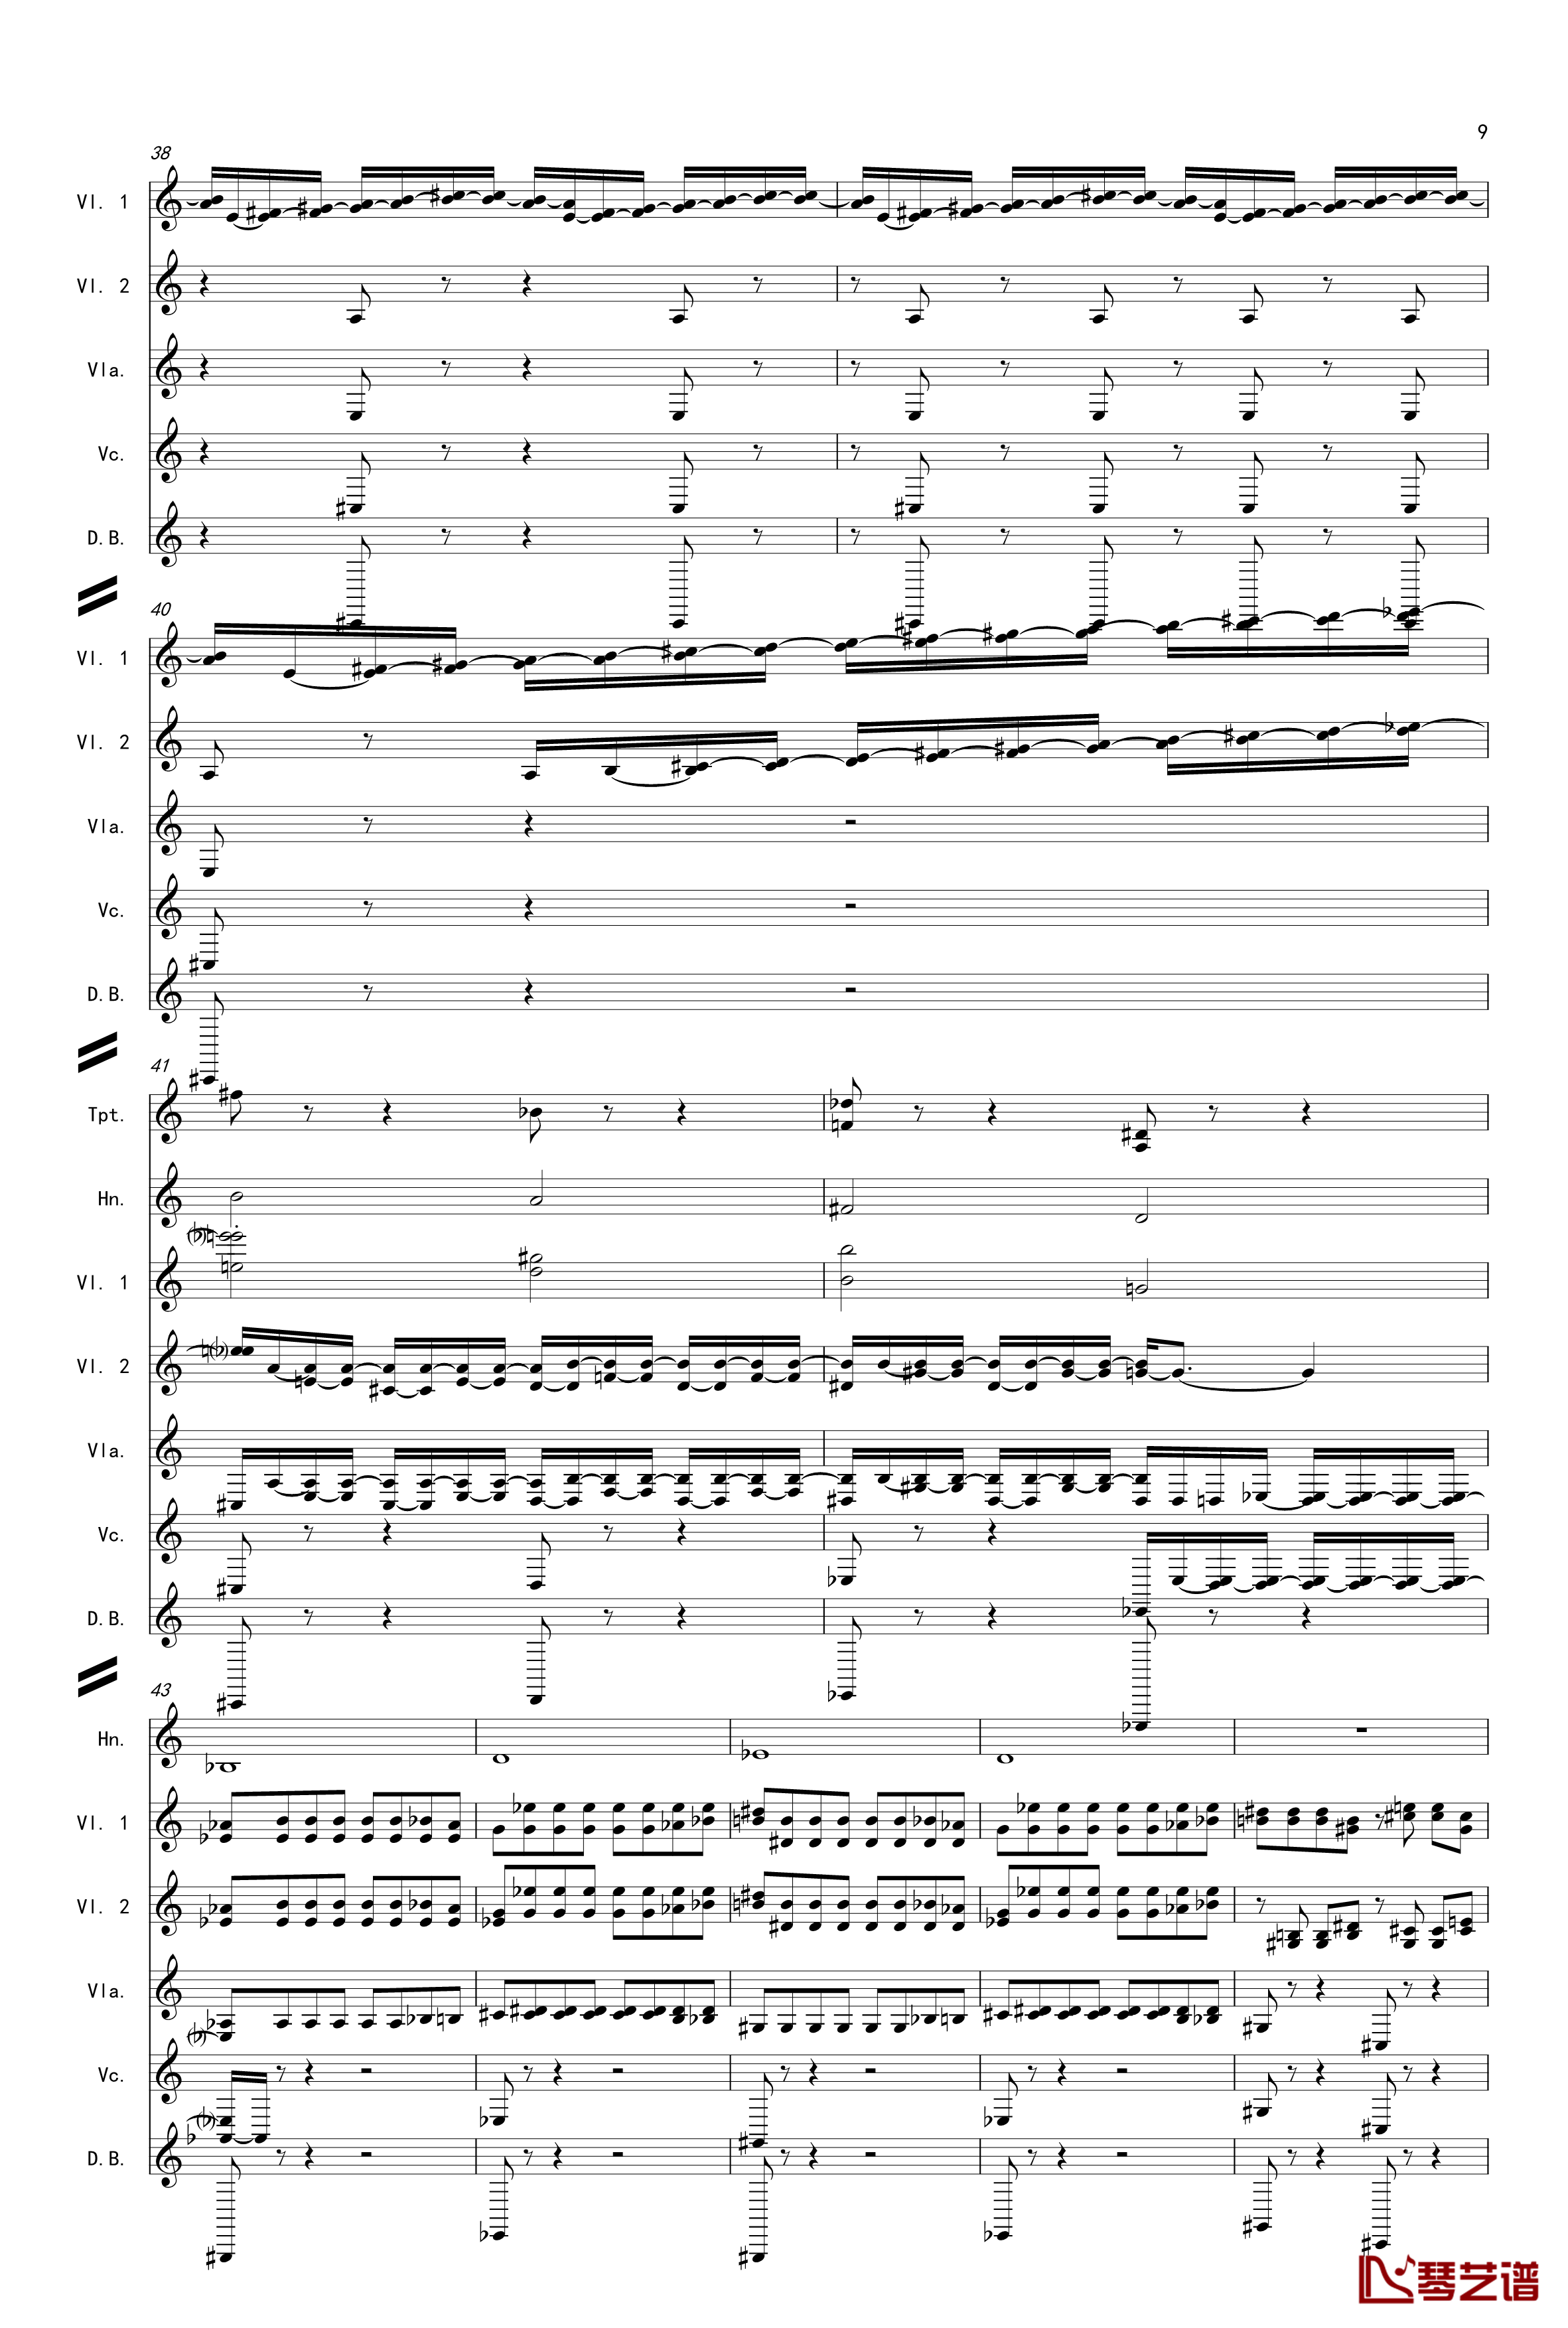 奏鸣曲之交响第14首Ⅲ钢琴谱-贝多芬-beethoven9